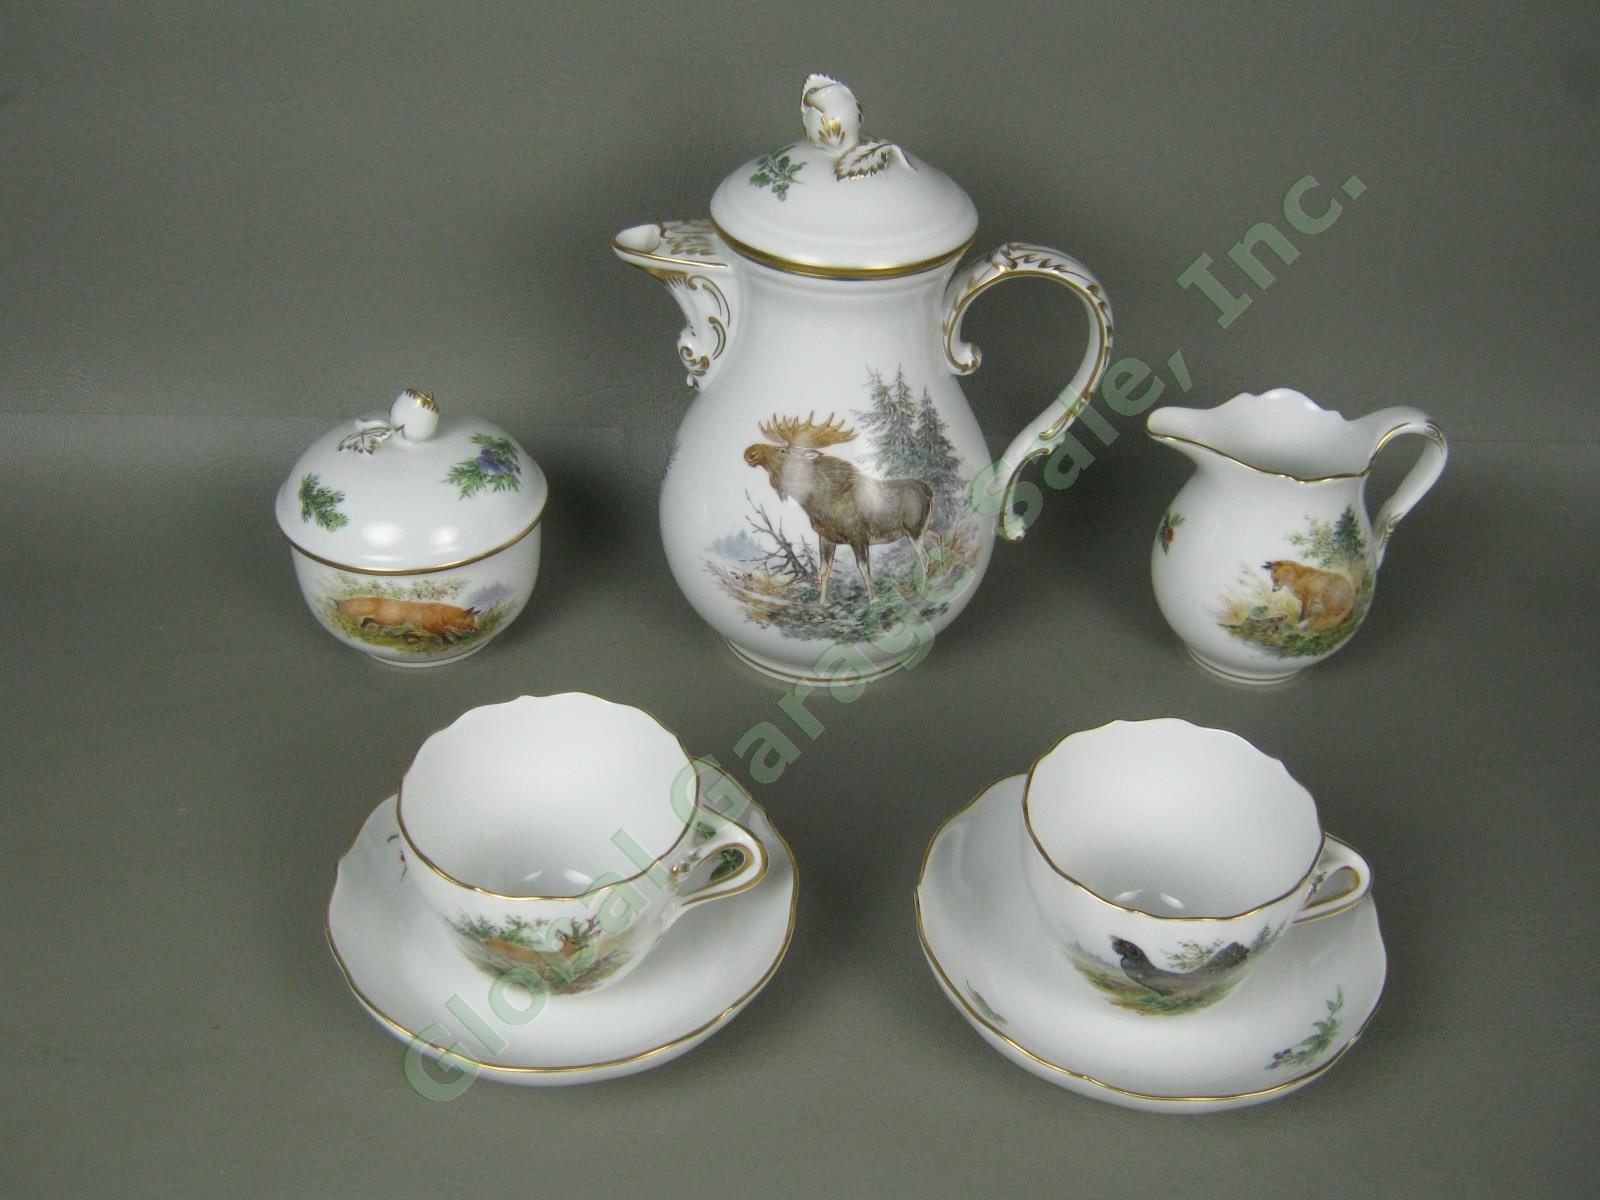 RARE Antique Meissen German Porcelain Wildlife Coffee Service Tea Set Pot Cups +